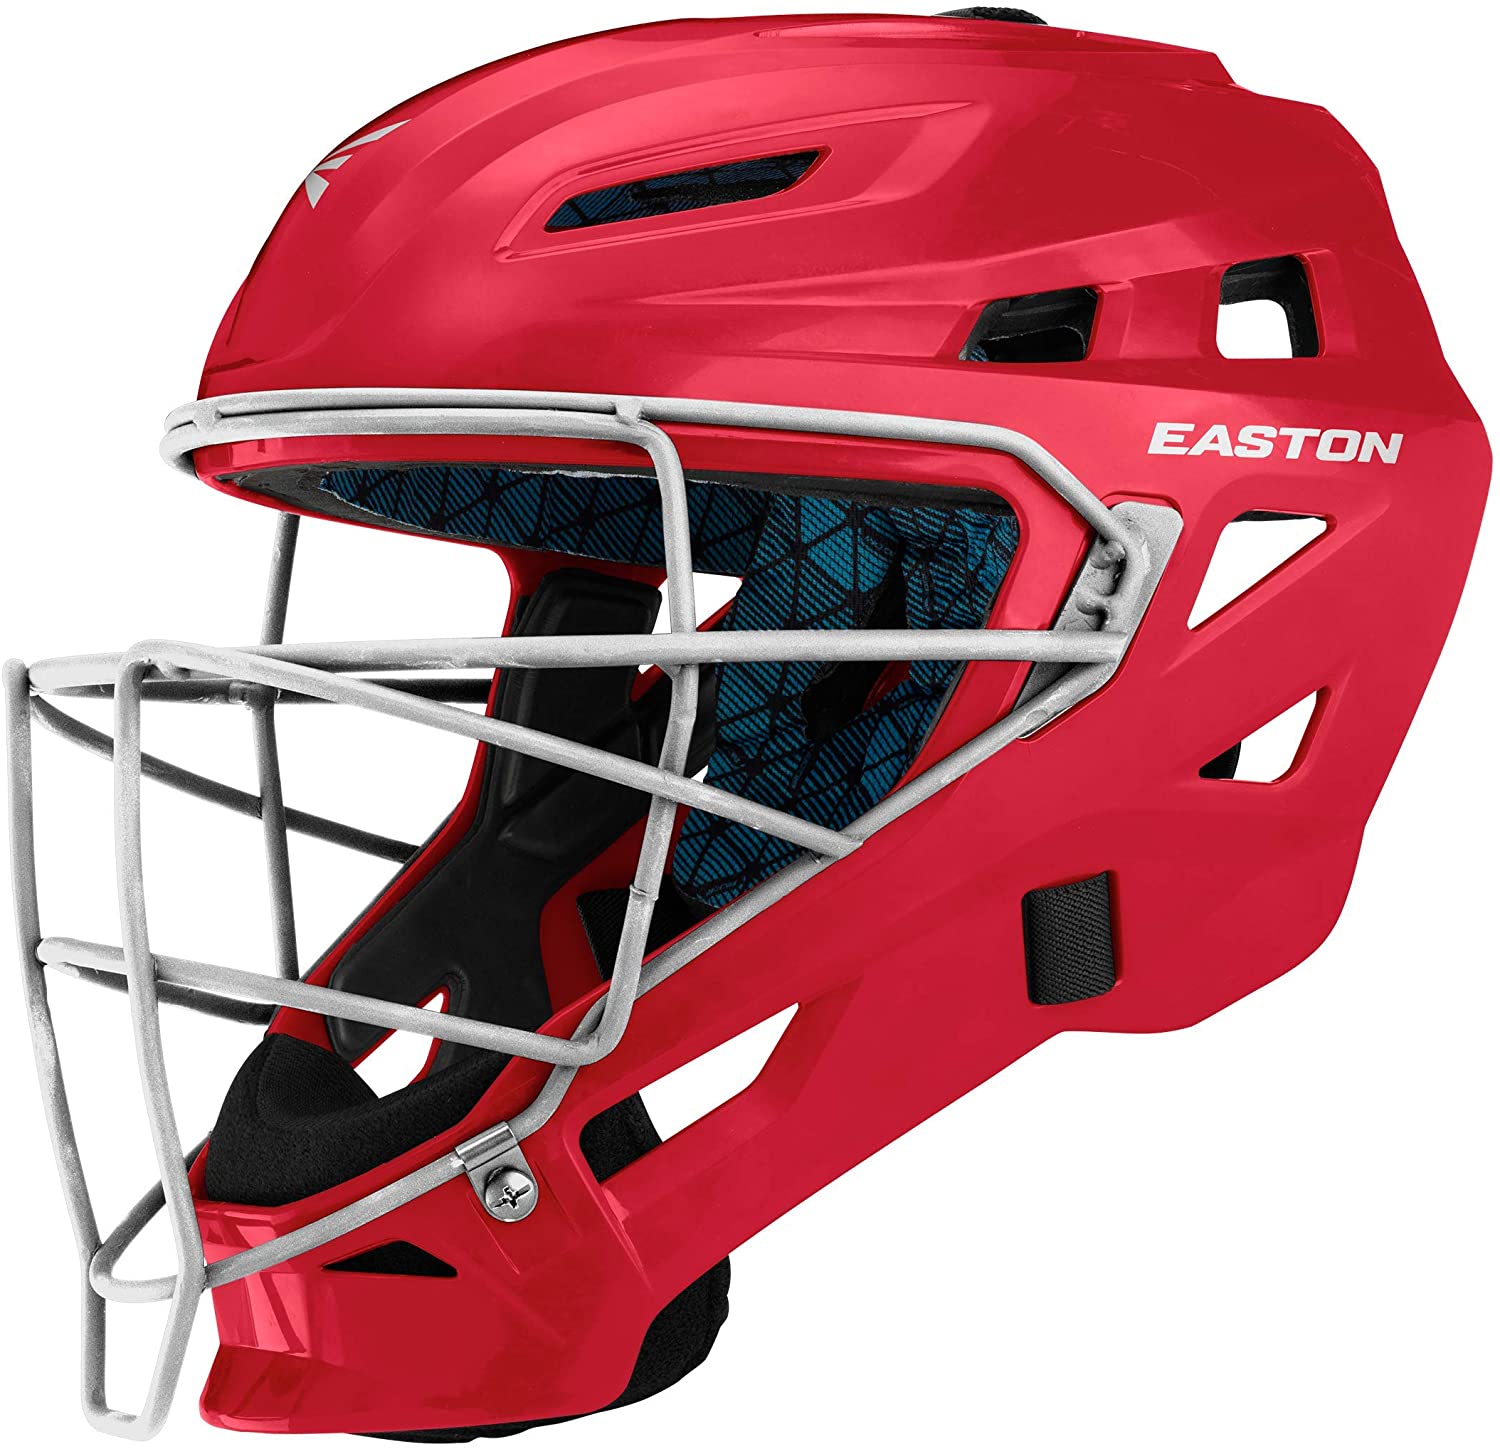 Easton Gametime Baseball Cacther's Helmet NOCSAE Approved